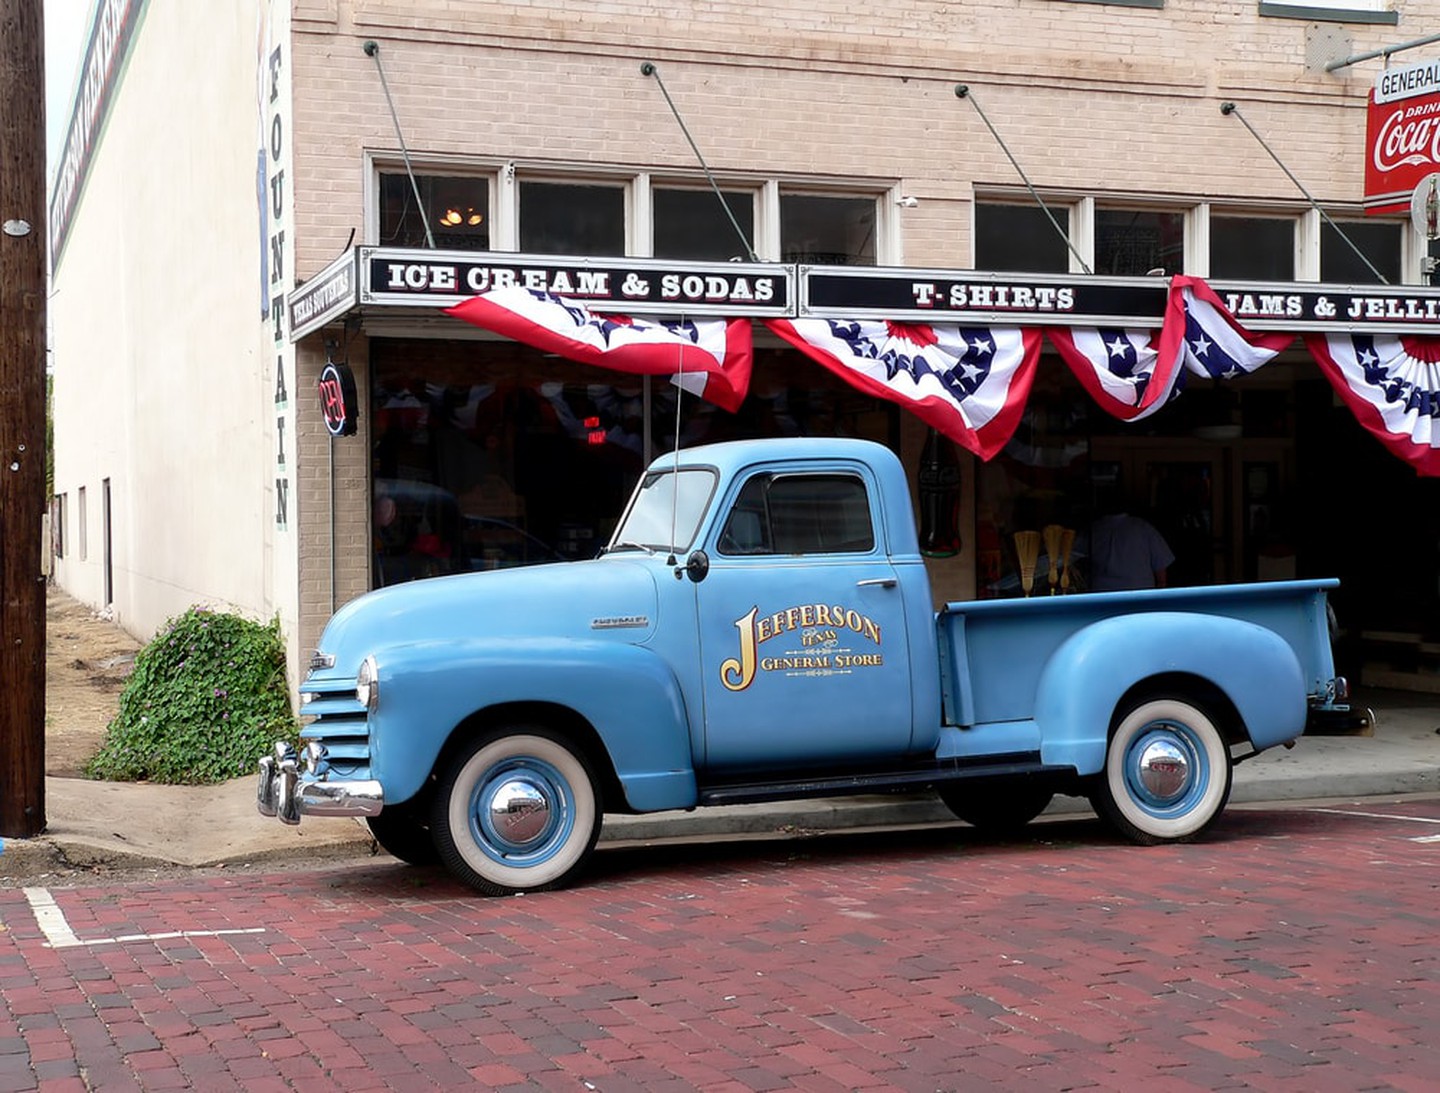 Xe tải cổ điển và cửa hàng tổng hợp ở Jefferson, Texas |  © Lori Martin / Shutterstock